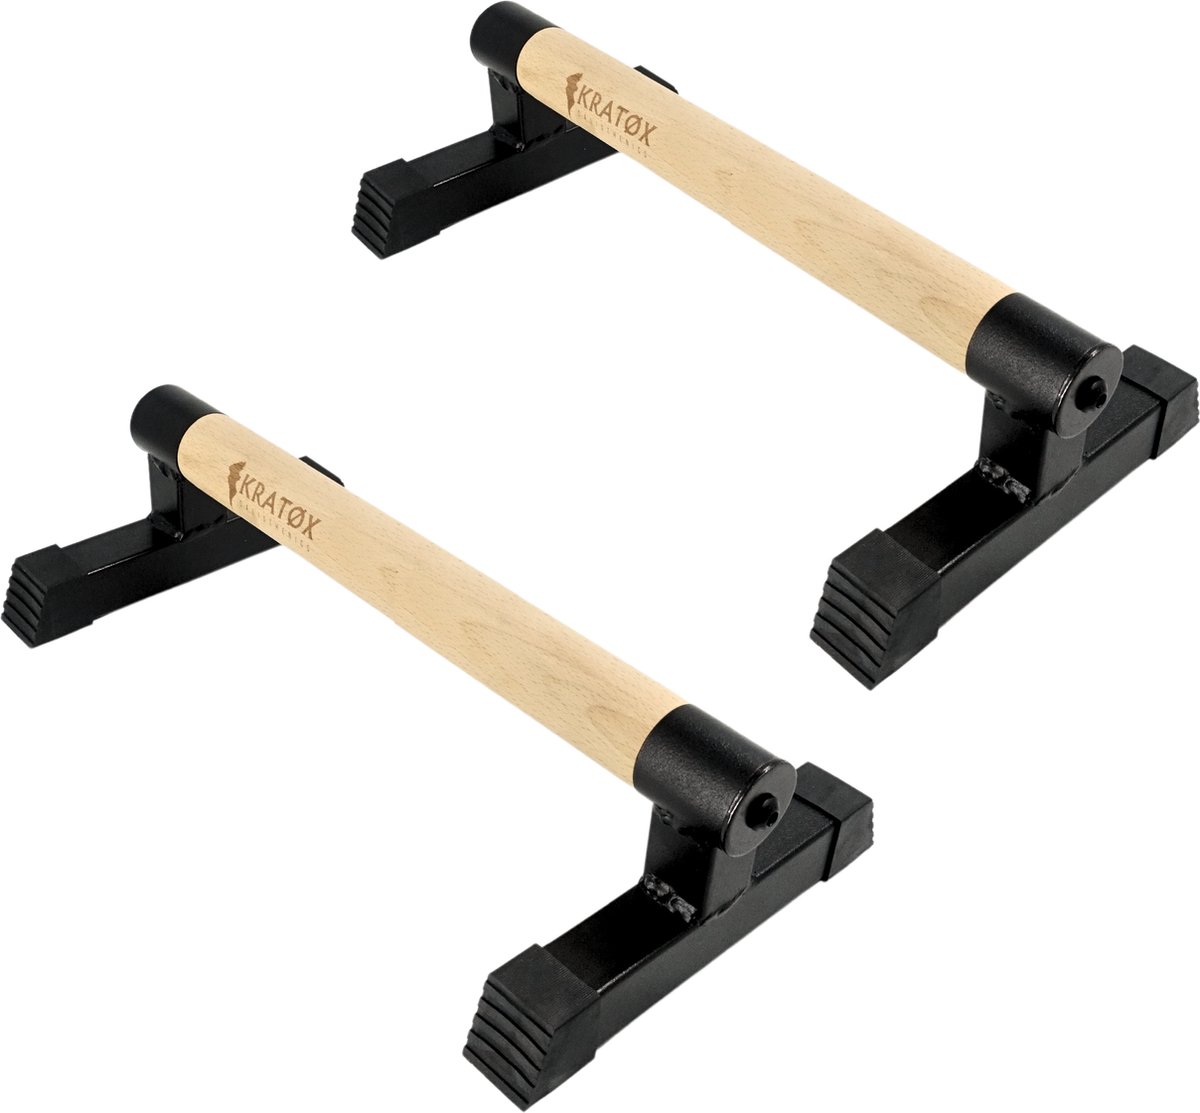 KRATØX Parallettes 50 cm Push up Bars - Calisthenics - Push up grips - parallettes hout - Opdruksteunen - Opdruk steunen - Opdrukken - Dip bars - Fitness - Crossfit - KRATØX